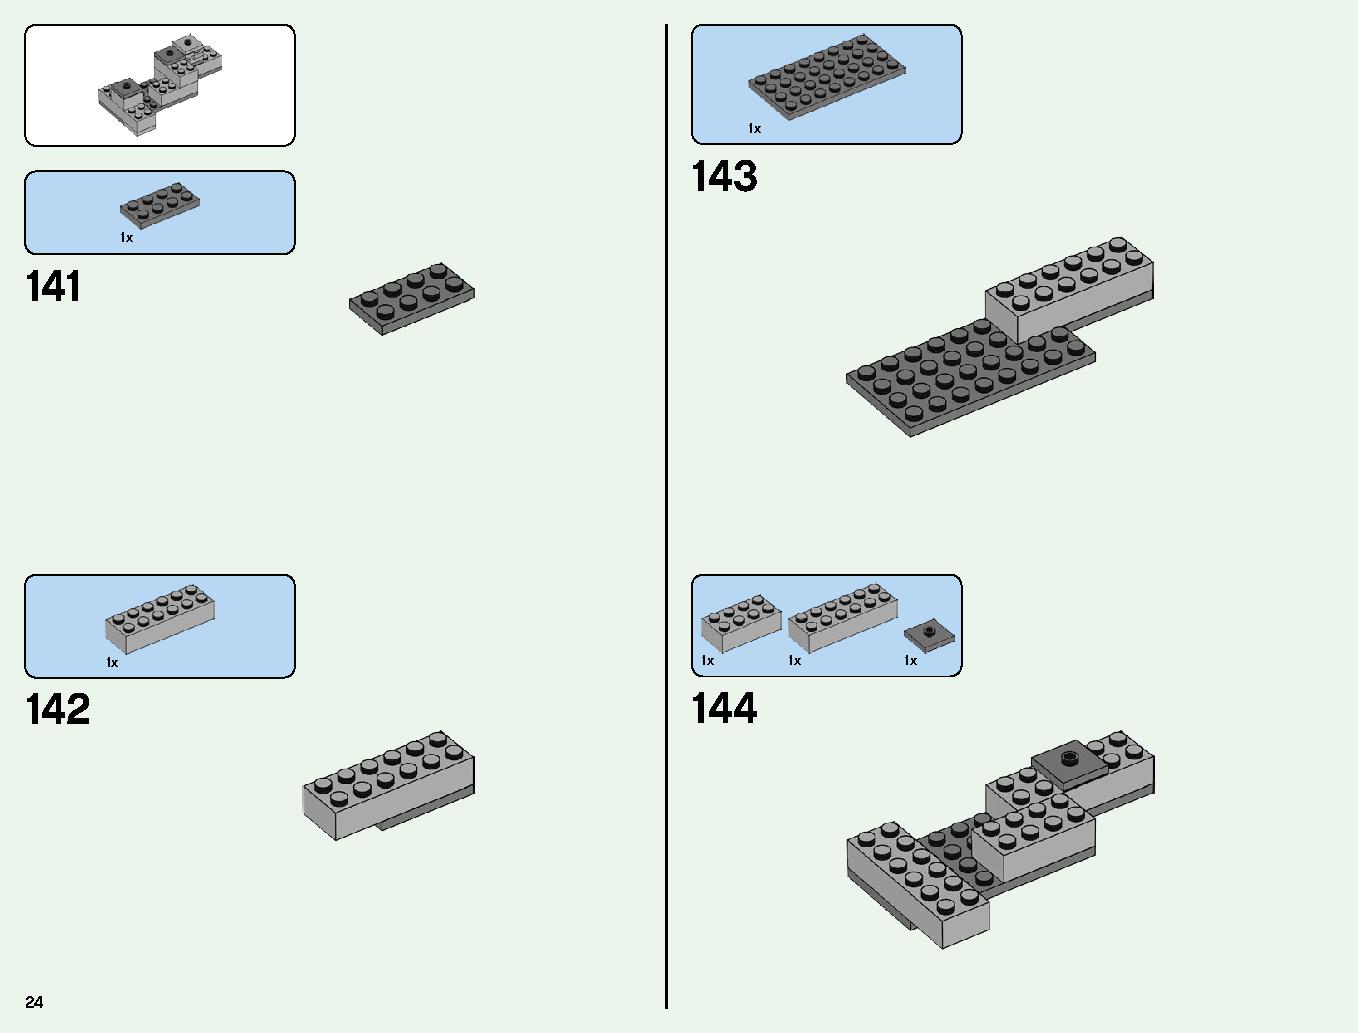 ベッドロックの冒険 21147 レゴの商品情報 レゴの説明書・組立方法 24 page